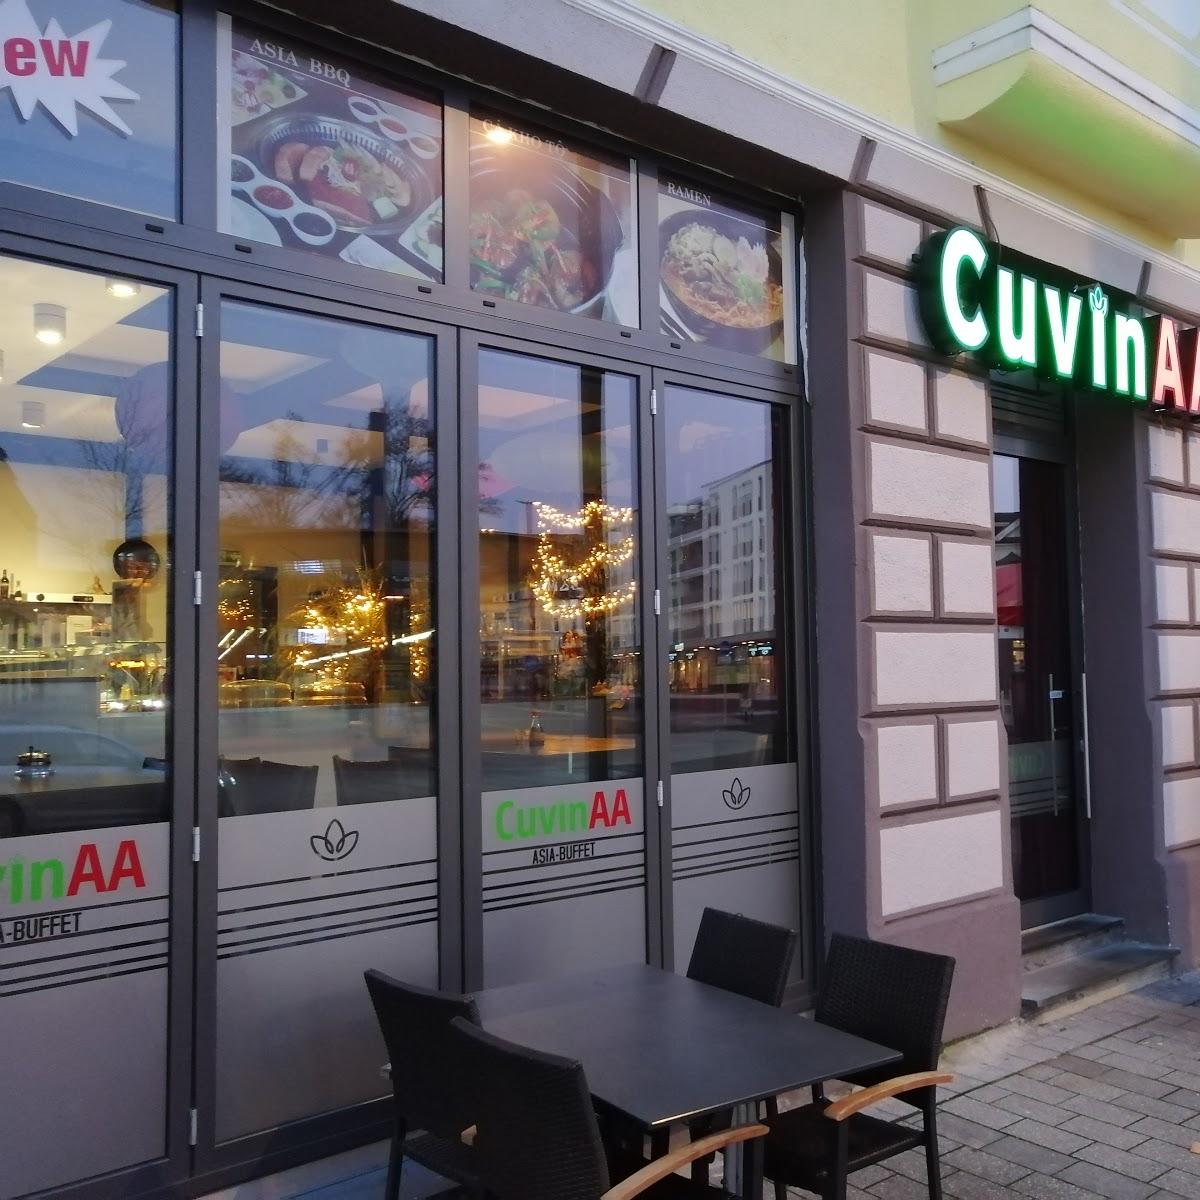 Restaurant "Cuvin AA" in  Aalen